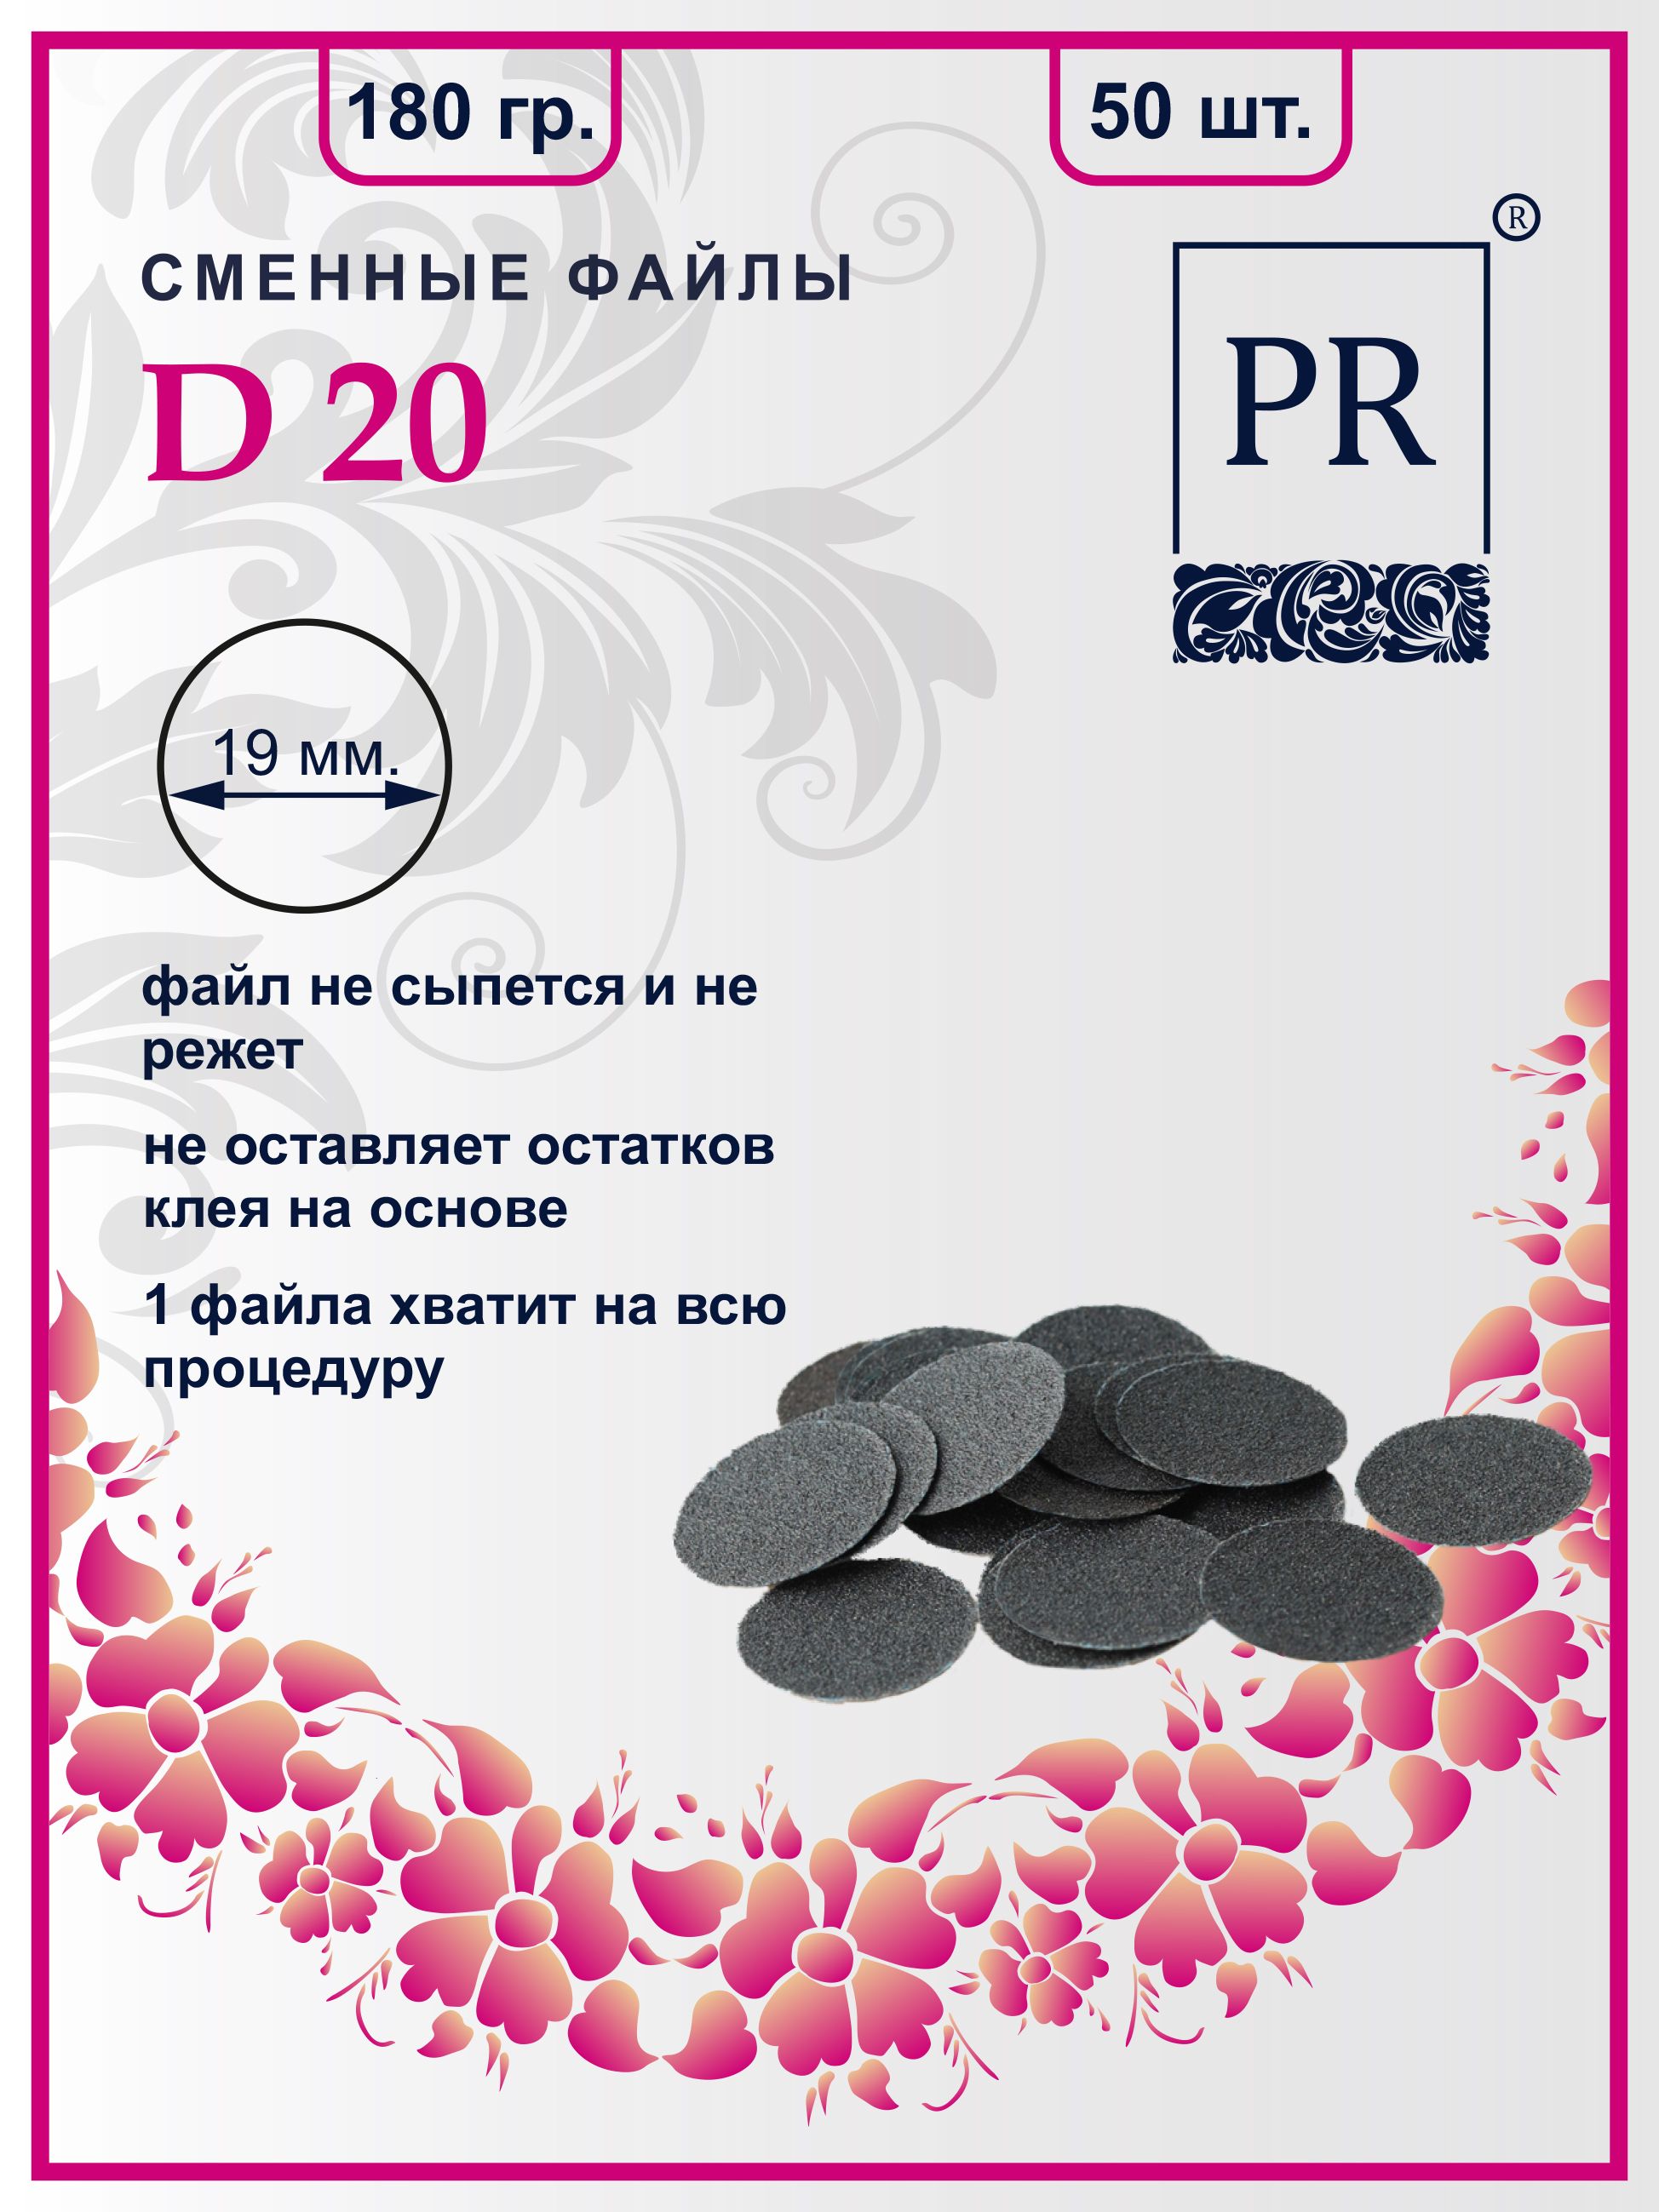 Сменные файлы Pilochki Russia диски для педикюра для диска М 180 грит 50 штук животные жарких стран раздаточные карточки 16 штук